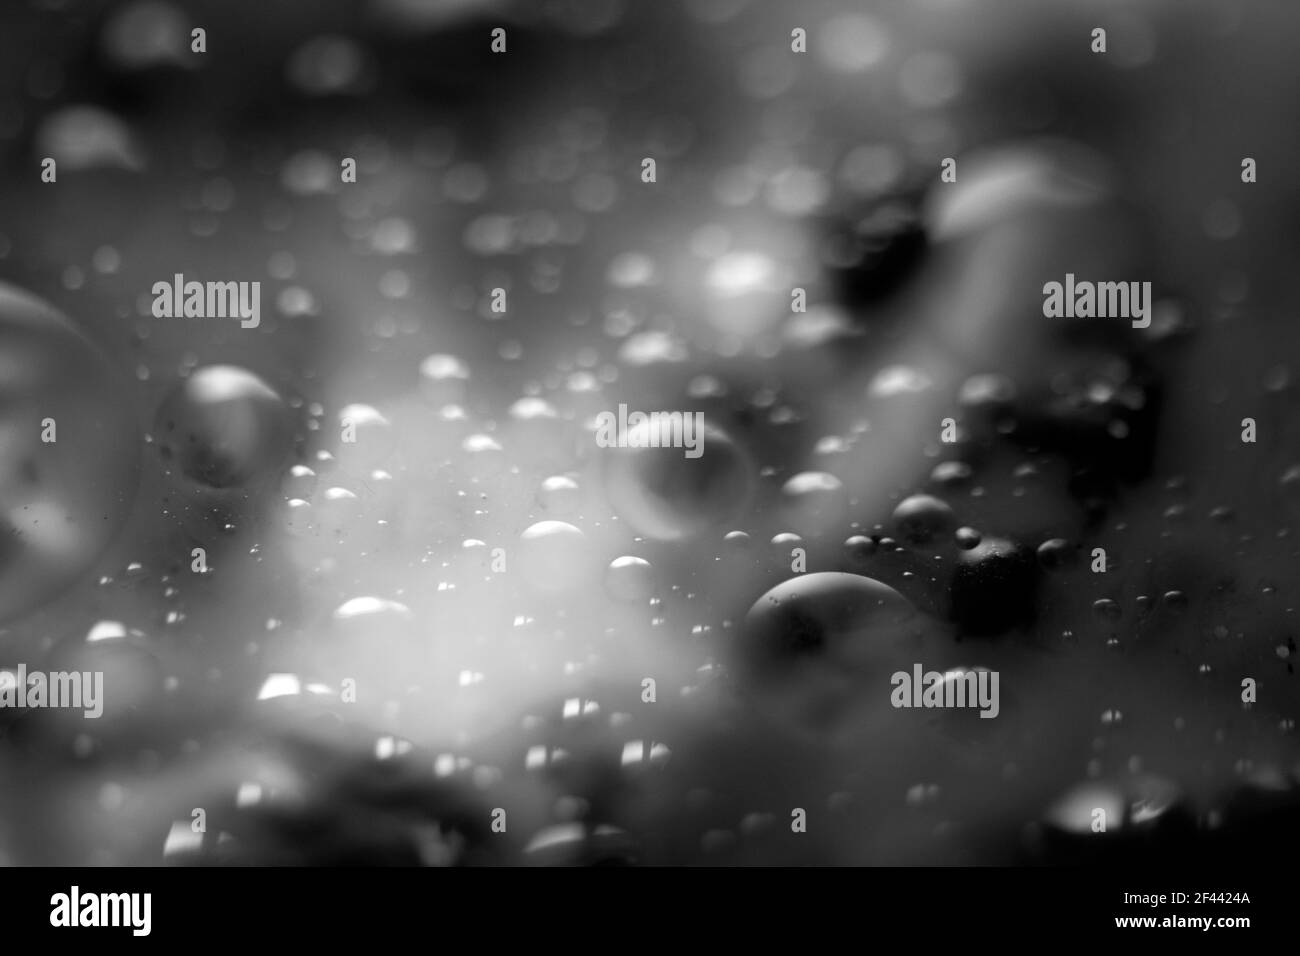 Arrière-plan abstrait noir et blanc, des bulles s'élevant dans une substance liquide. Arrière-plan flou Banque D'Images